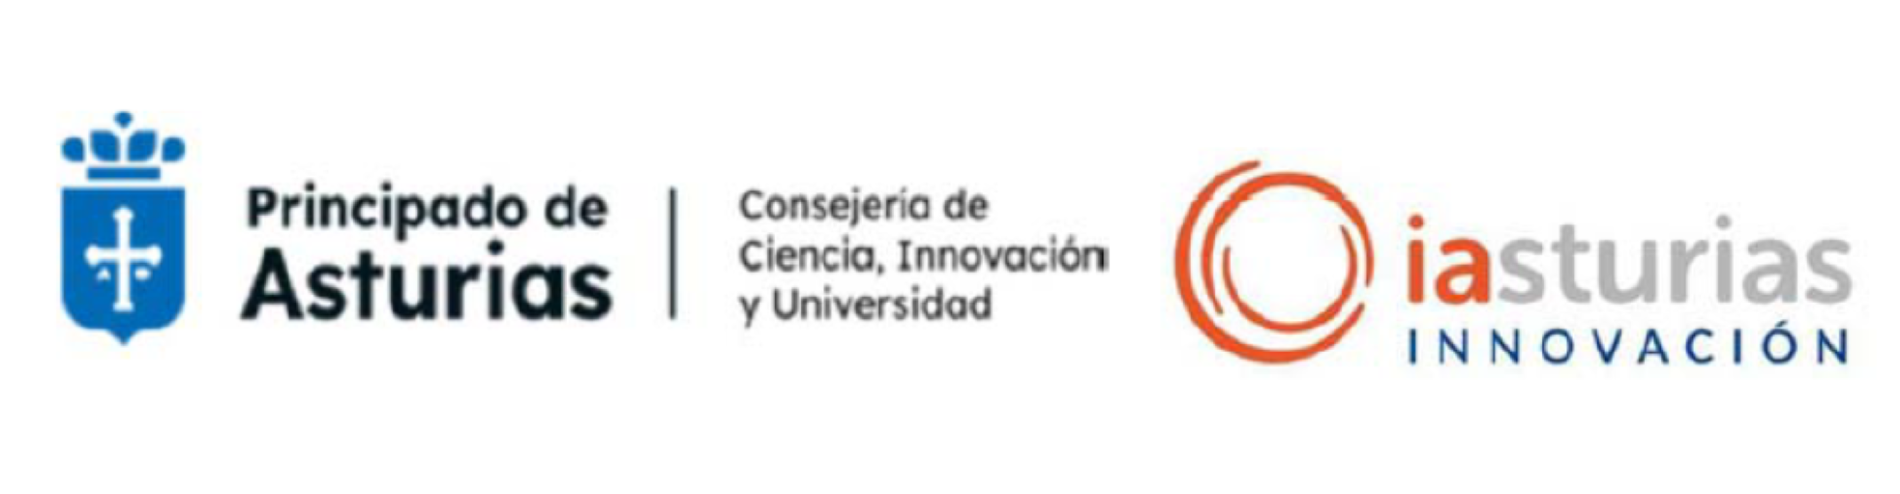 Logos Asturias Innovacion y Consejera